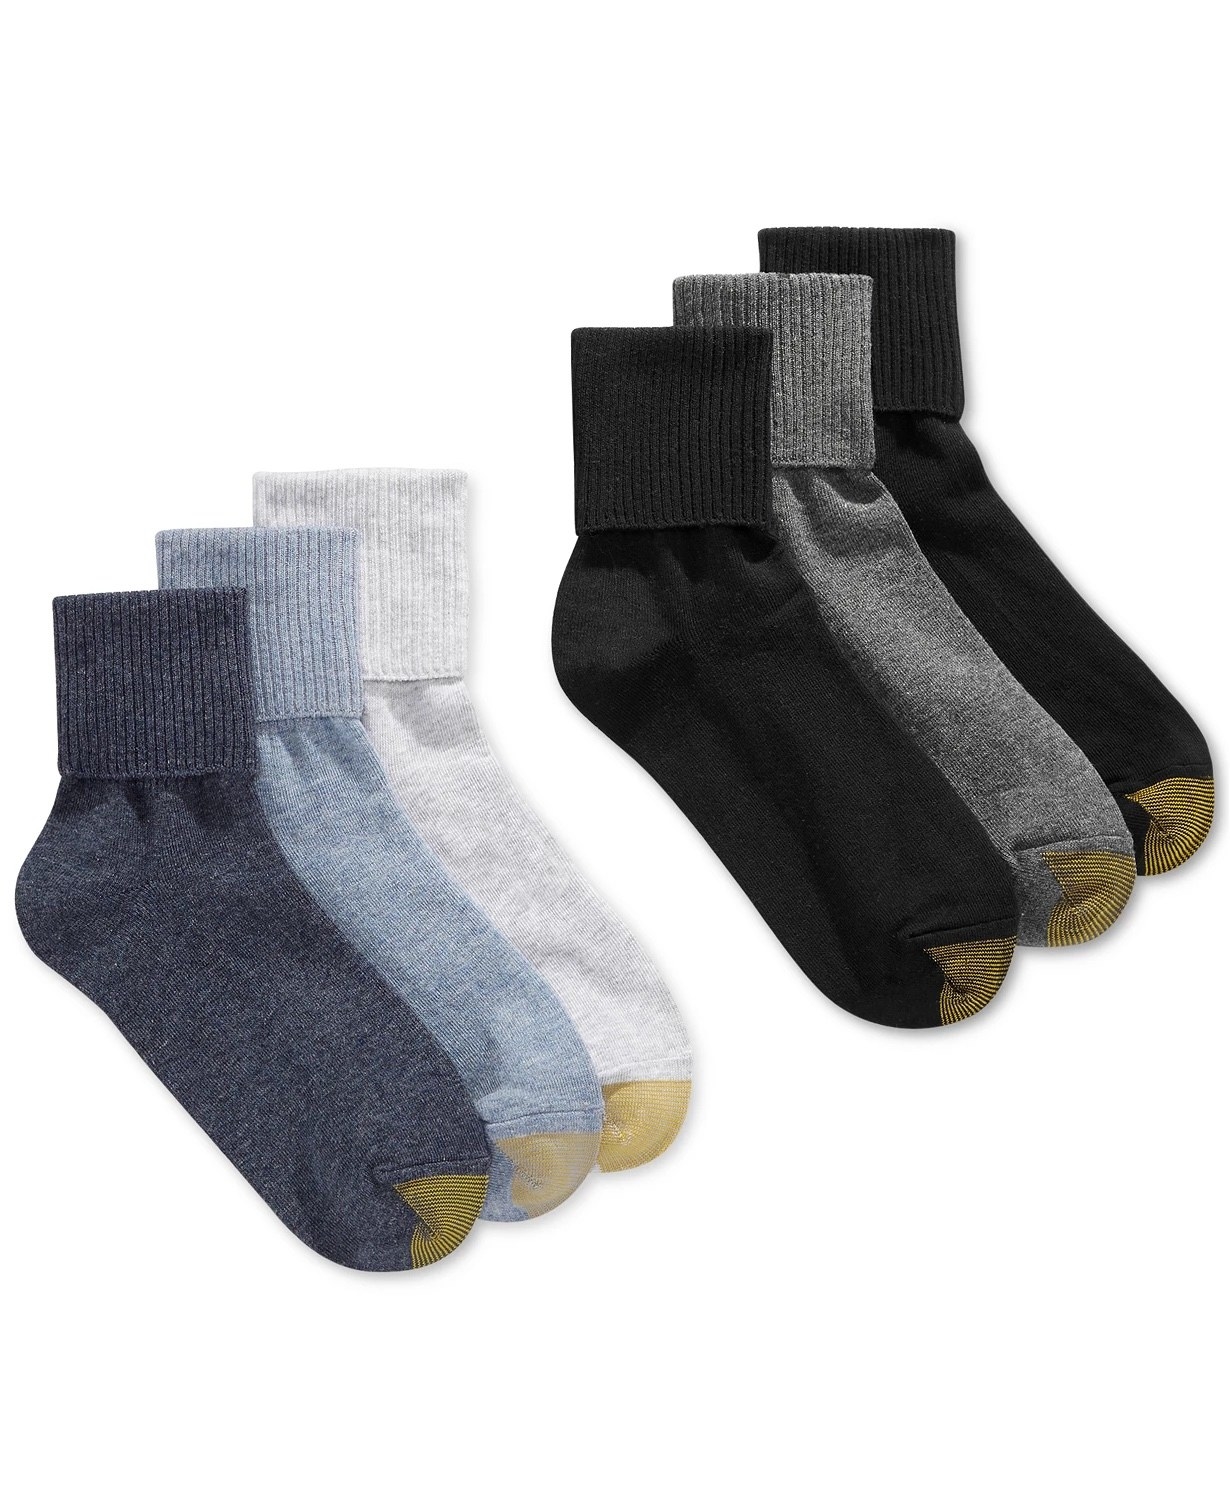 Six socks in  blue, light blue, white, black, gray and black